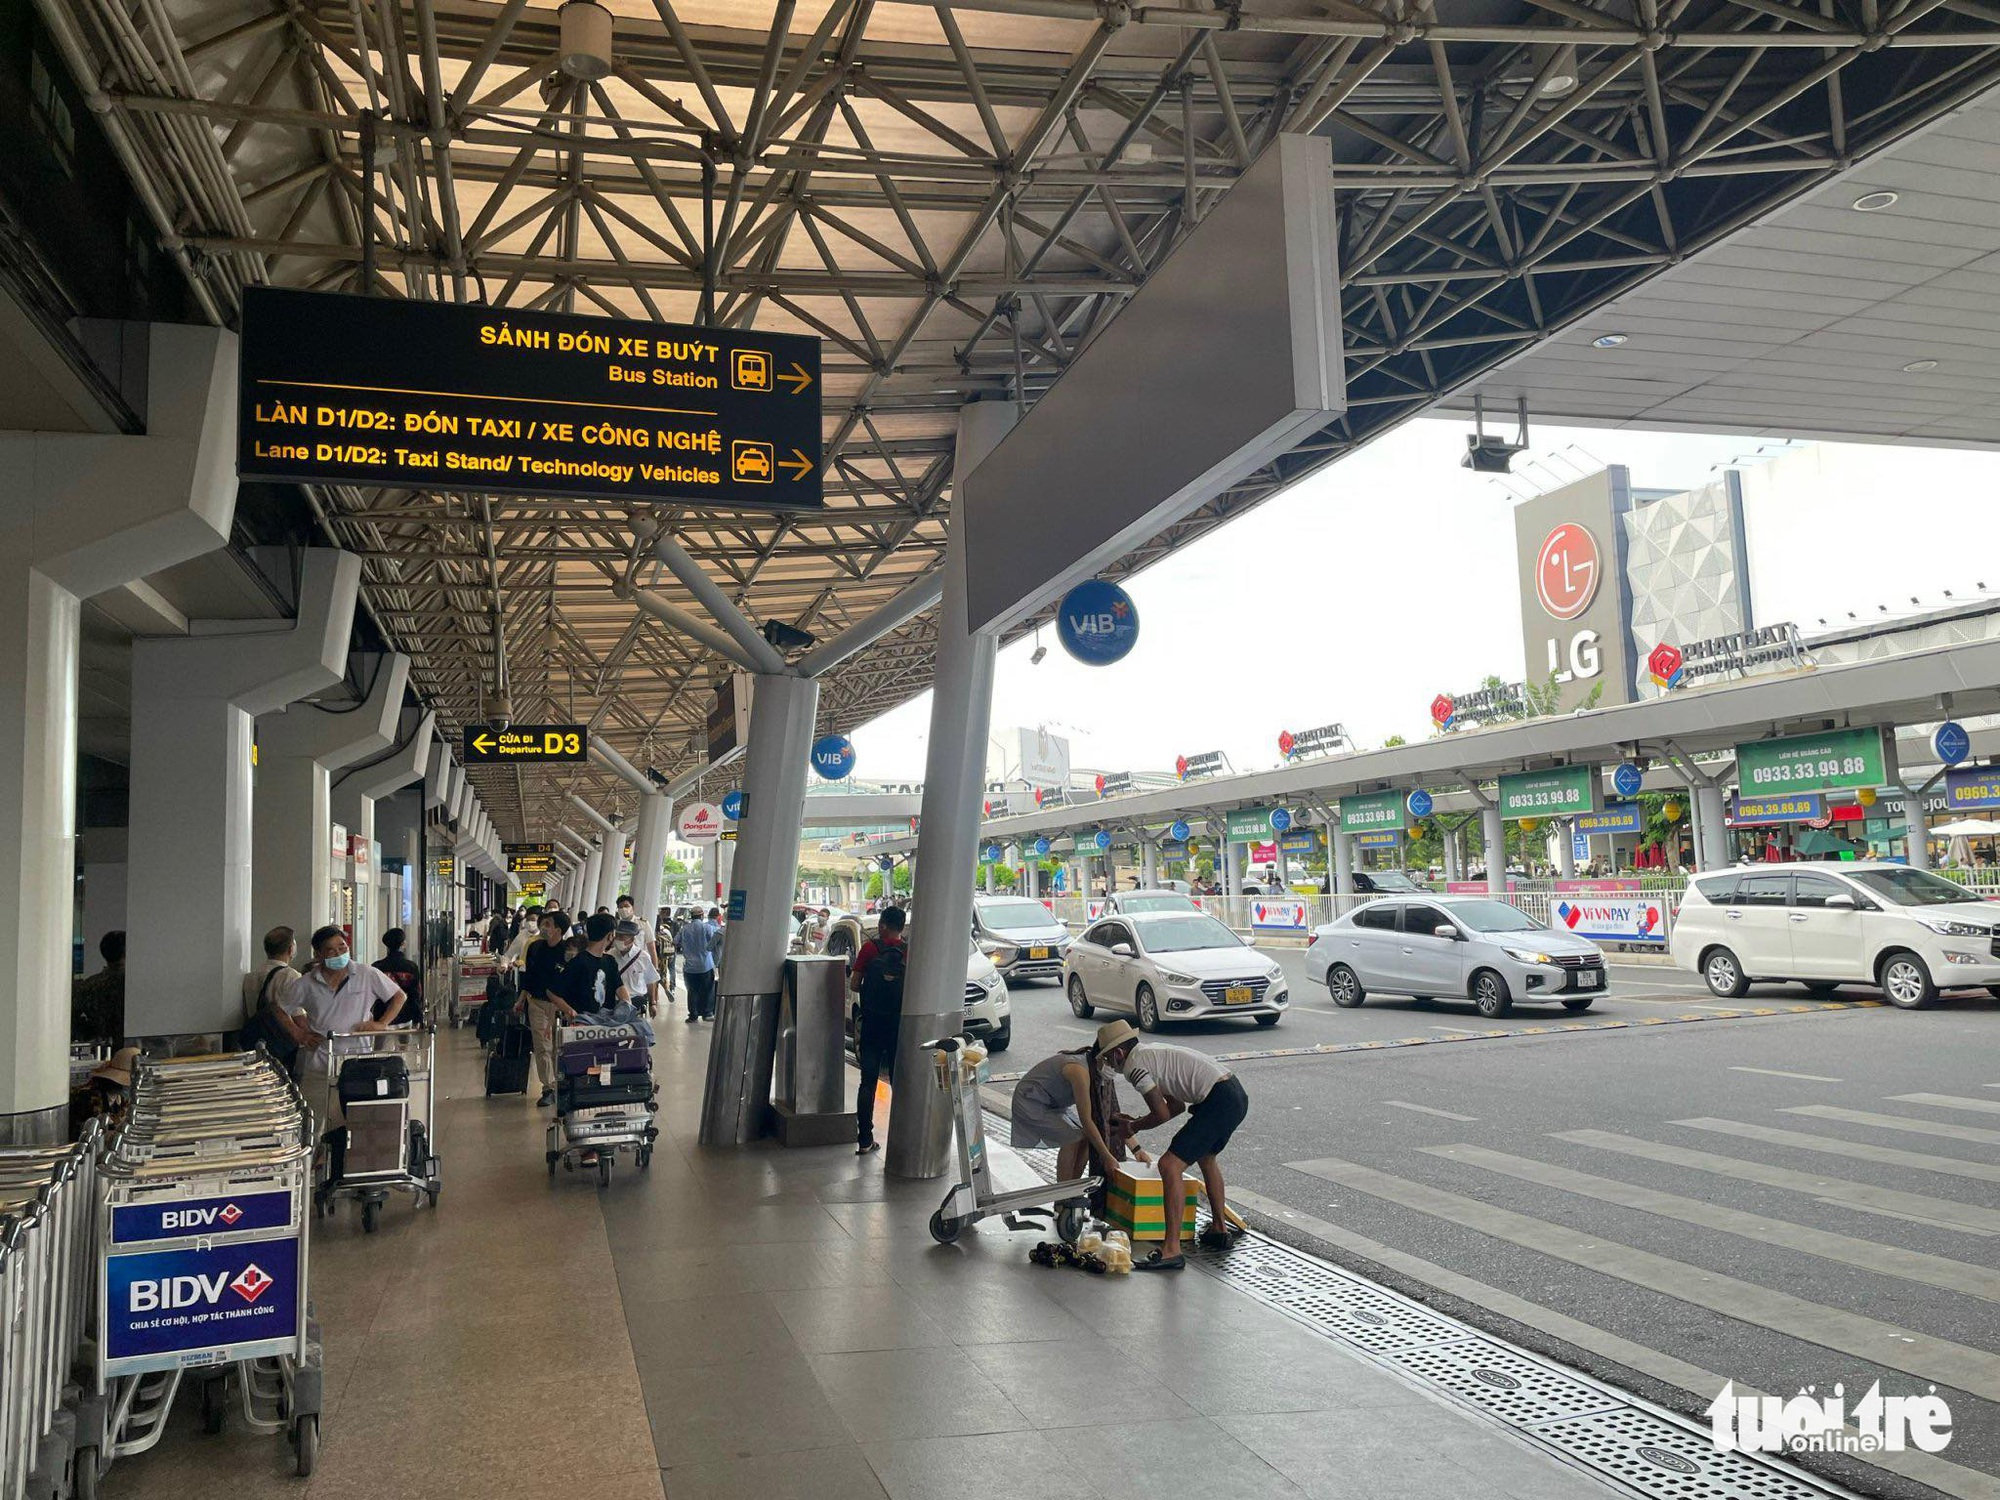 Sân bay Tân Sơn Nhất: Nhiều hãng dự kiến không soát giấy tờ ở cửa máy bay trong cao điểm Tết - Ảnh 1.